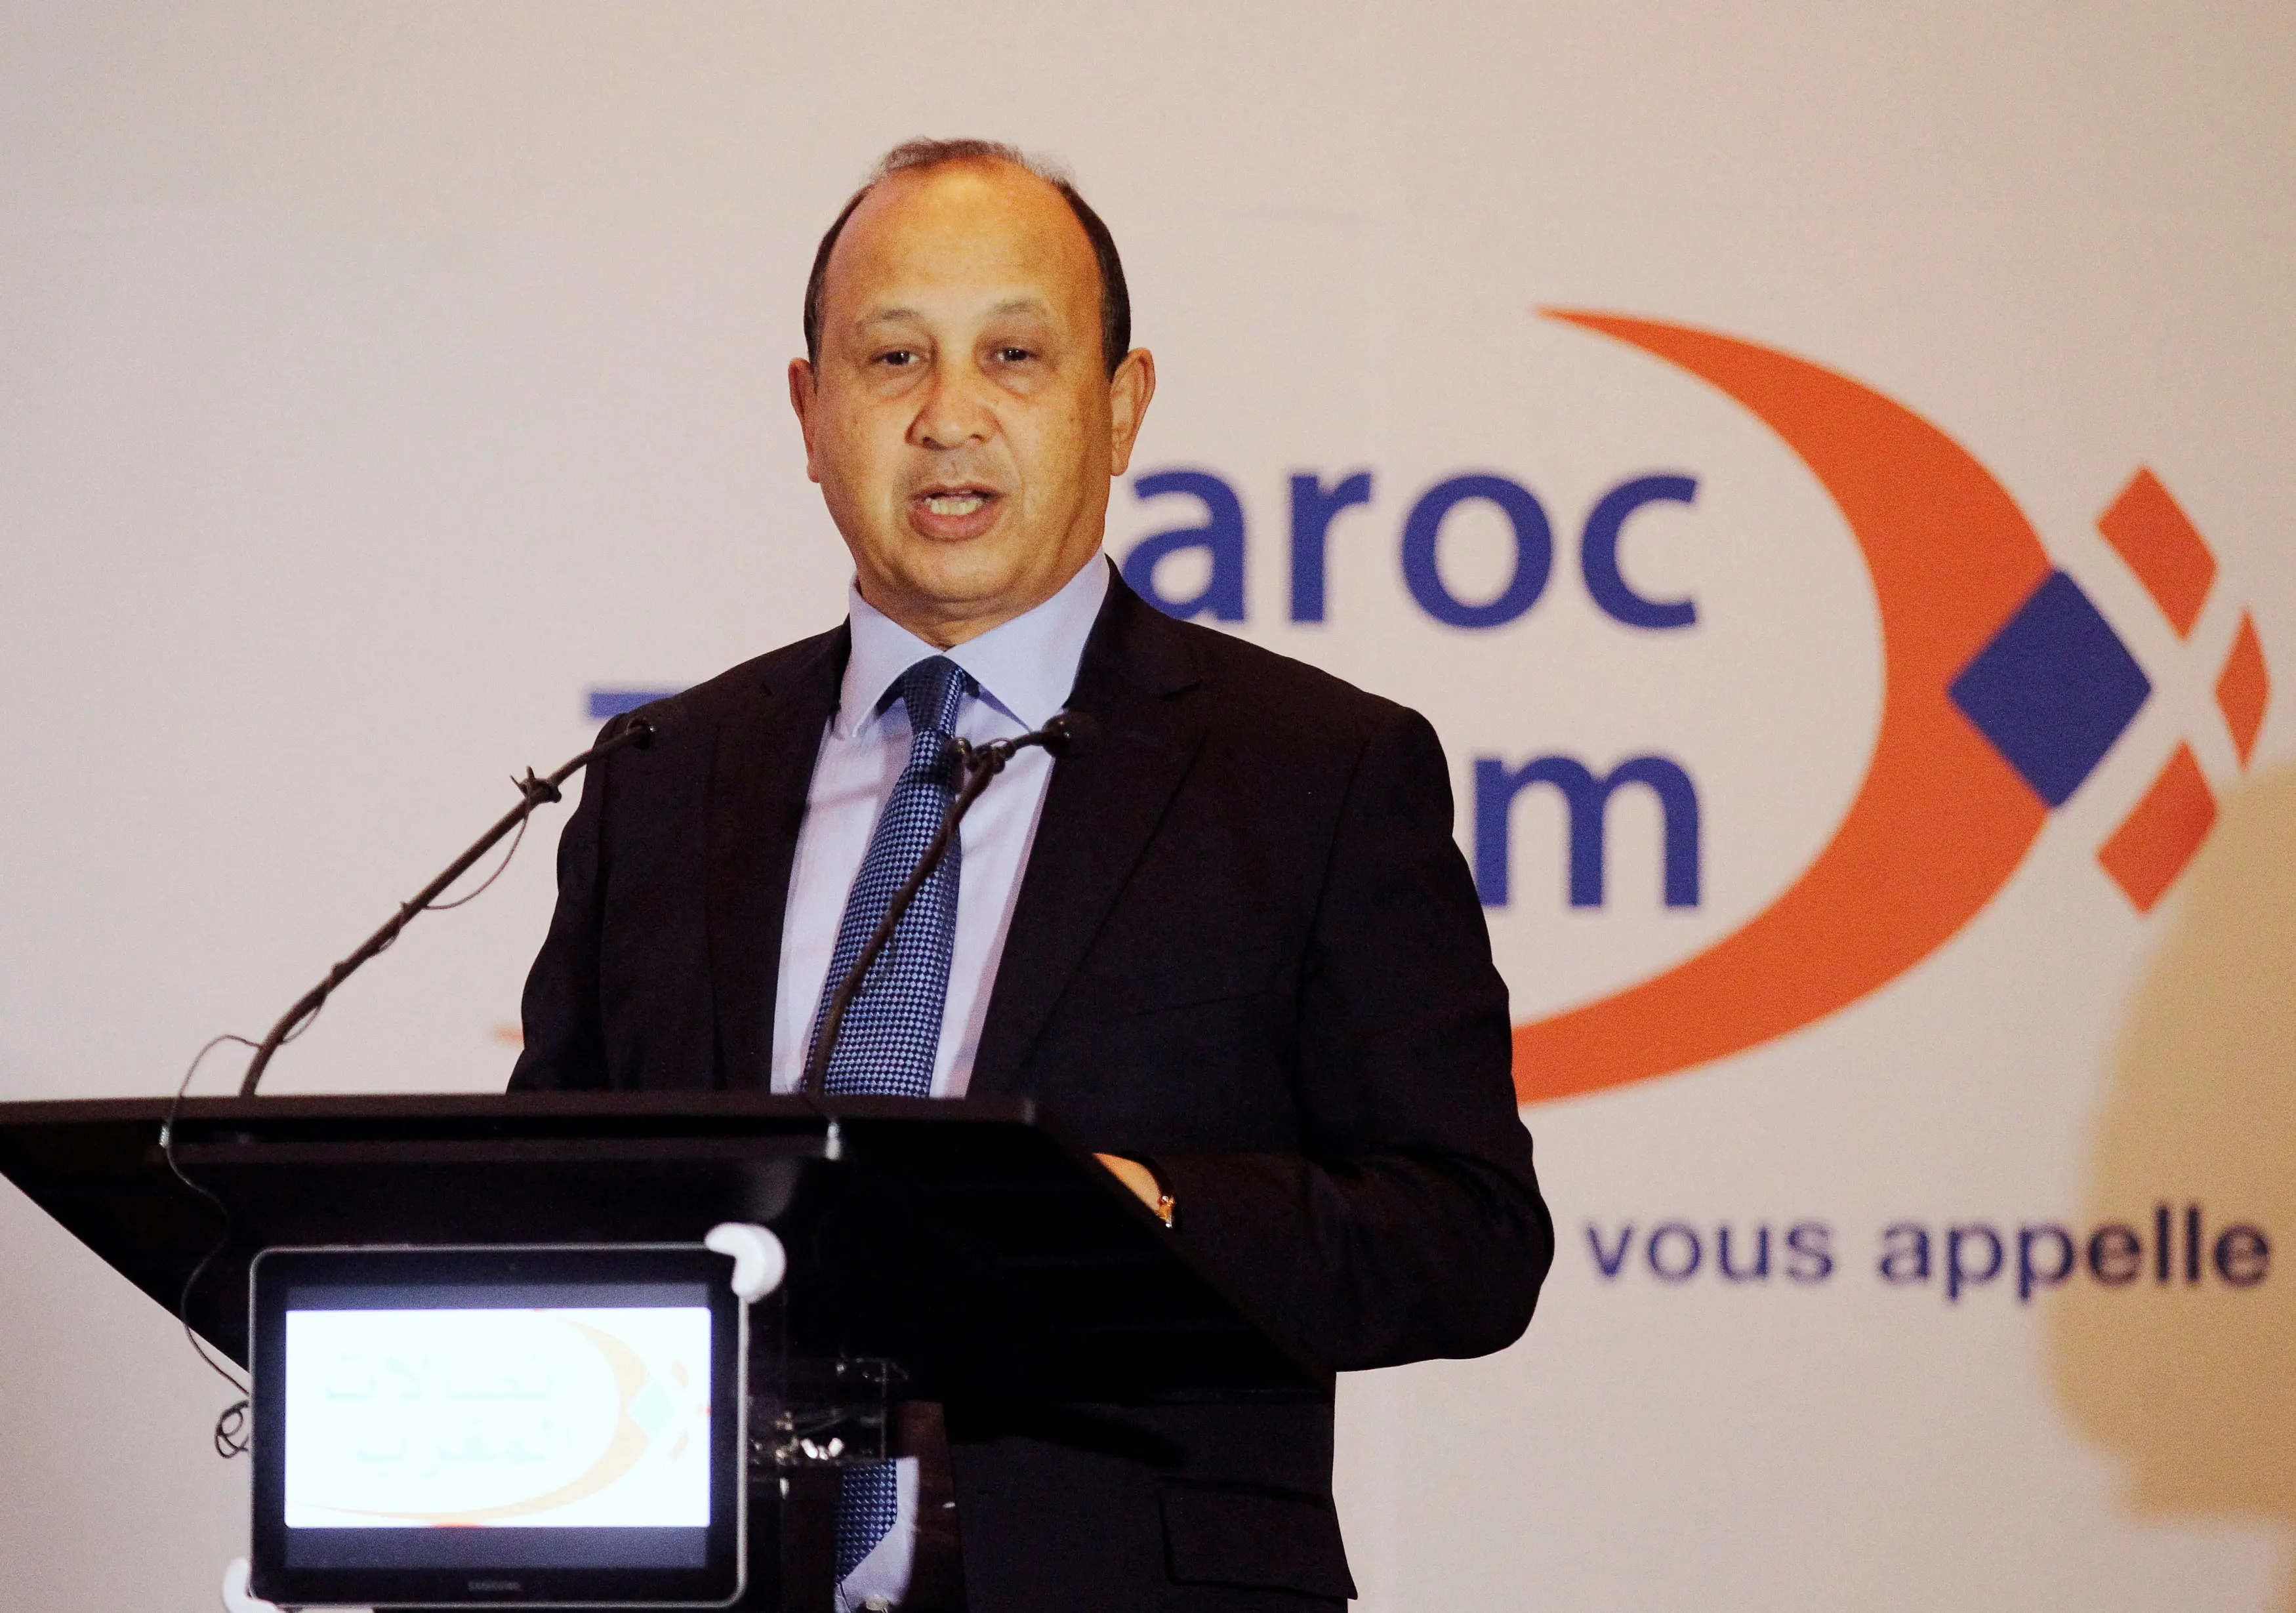 القضاء يرفض استئناف "اتصالات المغرب" على غرامة بـ 630 مليون دولار لـ"وانا"